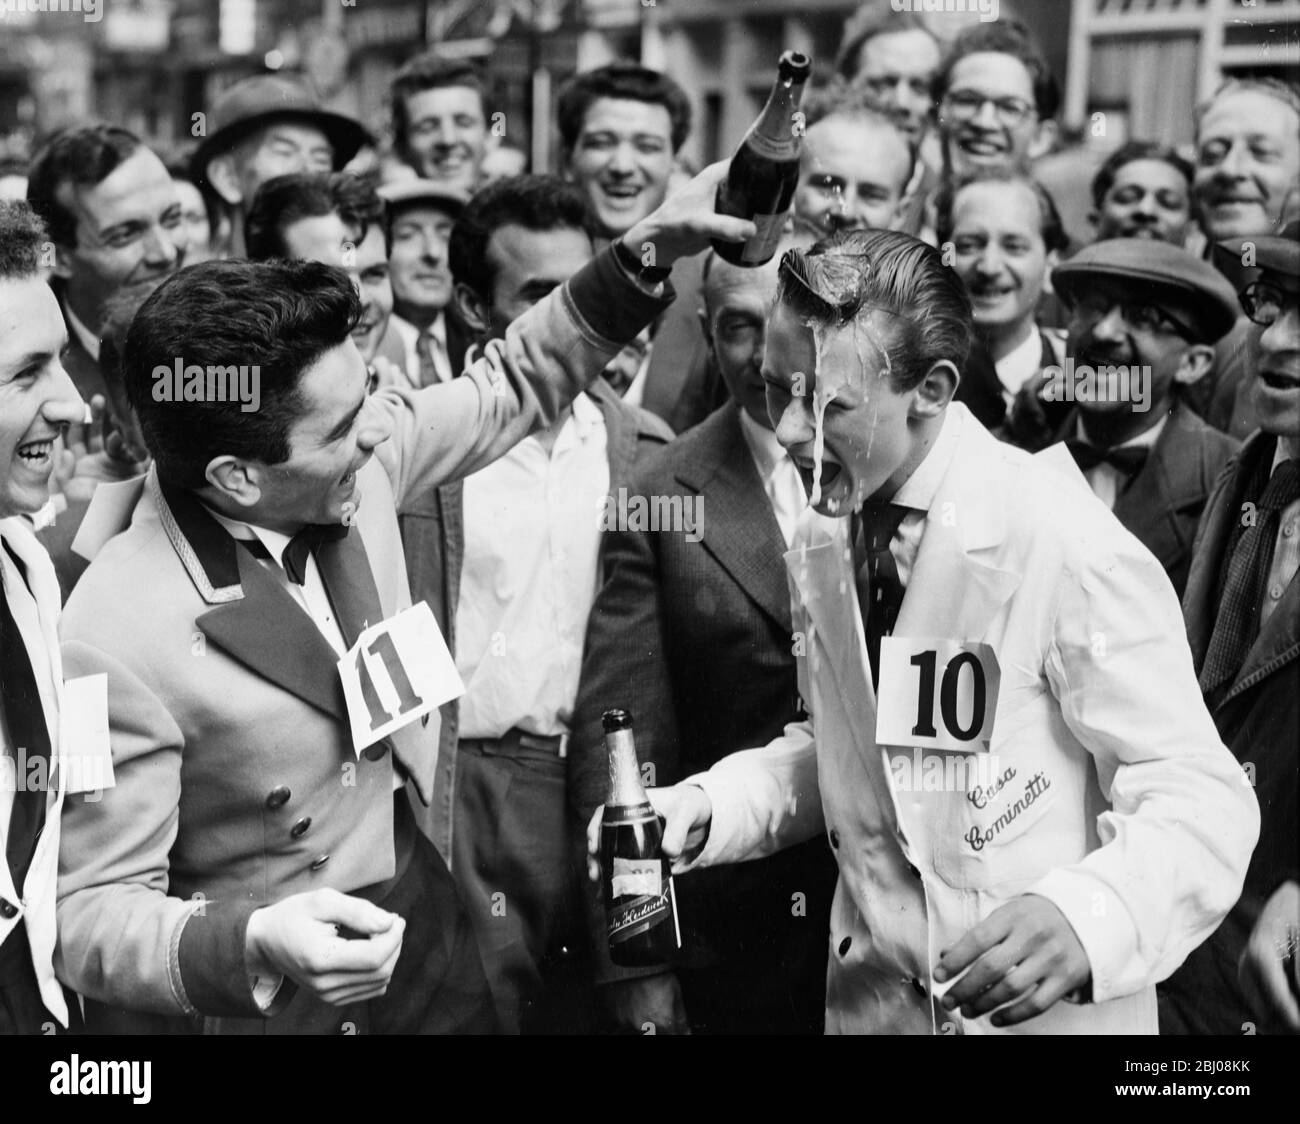 Michael Bushell, der jüngste Konkurrent mit 15 Jahren, wird von Platz zwei Guido adorne mit Champagner bespritzt, nachdem er das Soho Fair Wazers' Race vom Soho Square zur Greek Street gewonnen hatte, während er ein Tablett mit einer halben Flasche Wein, einem Glas und einer Aschenschale trug. Soho, London, England. - 13. Juli 1958 Stockfoto